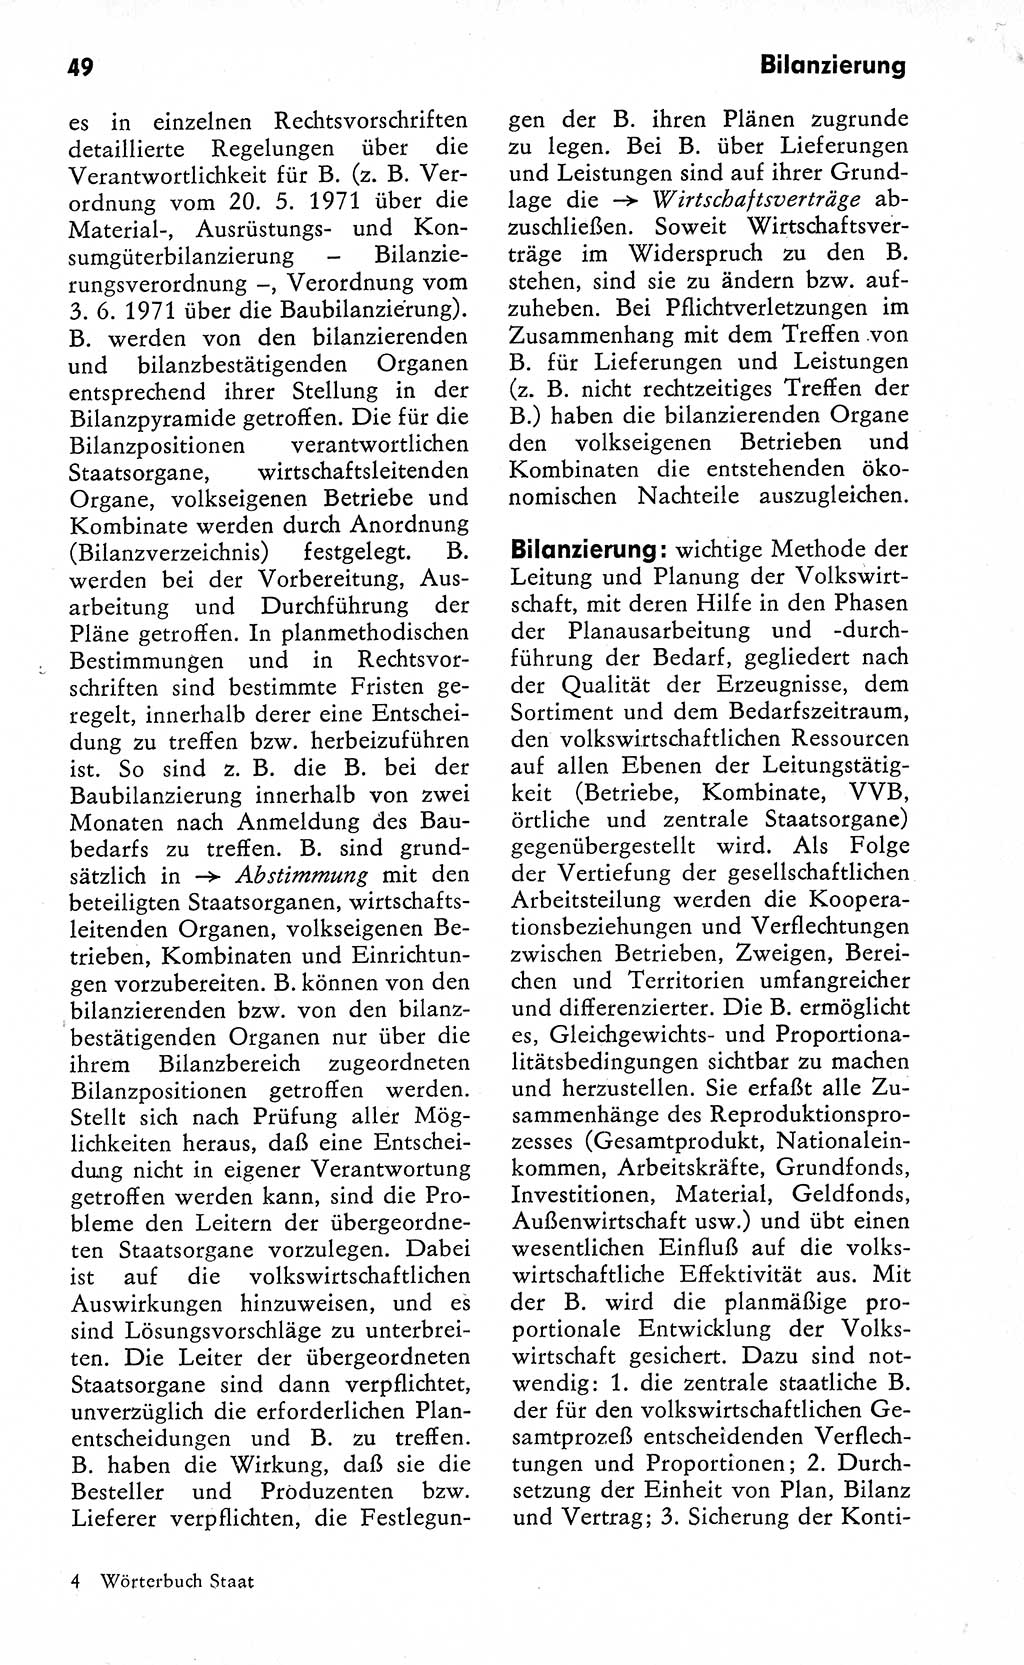 Wörterbuch zum sozialistischen Staat [Deutsche Demokratische Republik (DDR)] 1974, Seite 49 (Wb. soz. St. DDR 1974, S. 49)